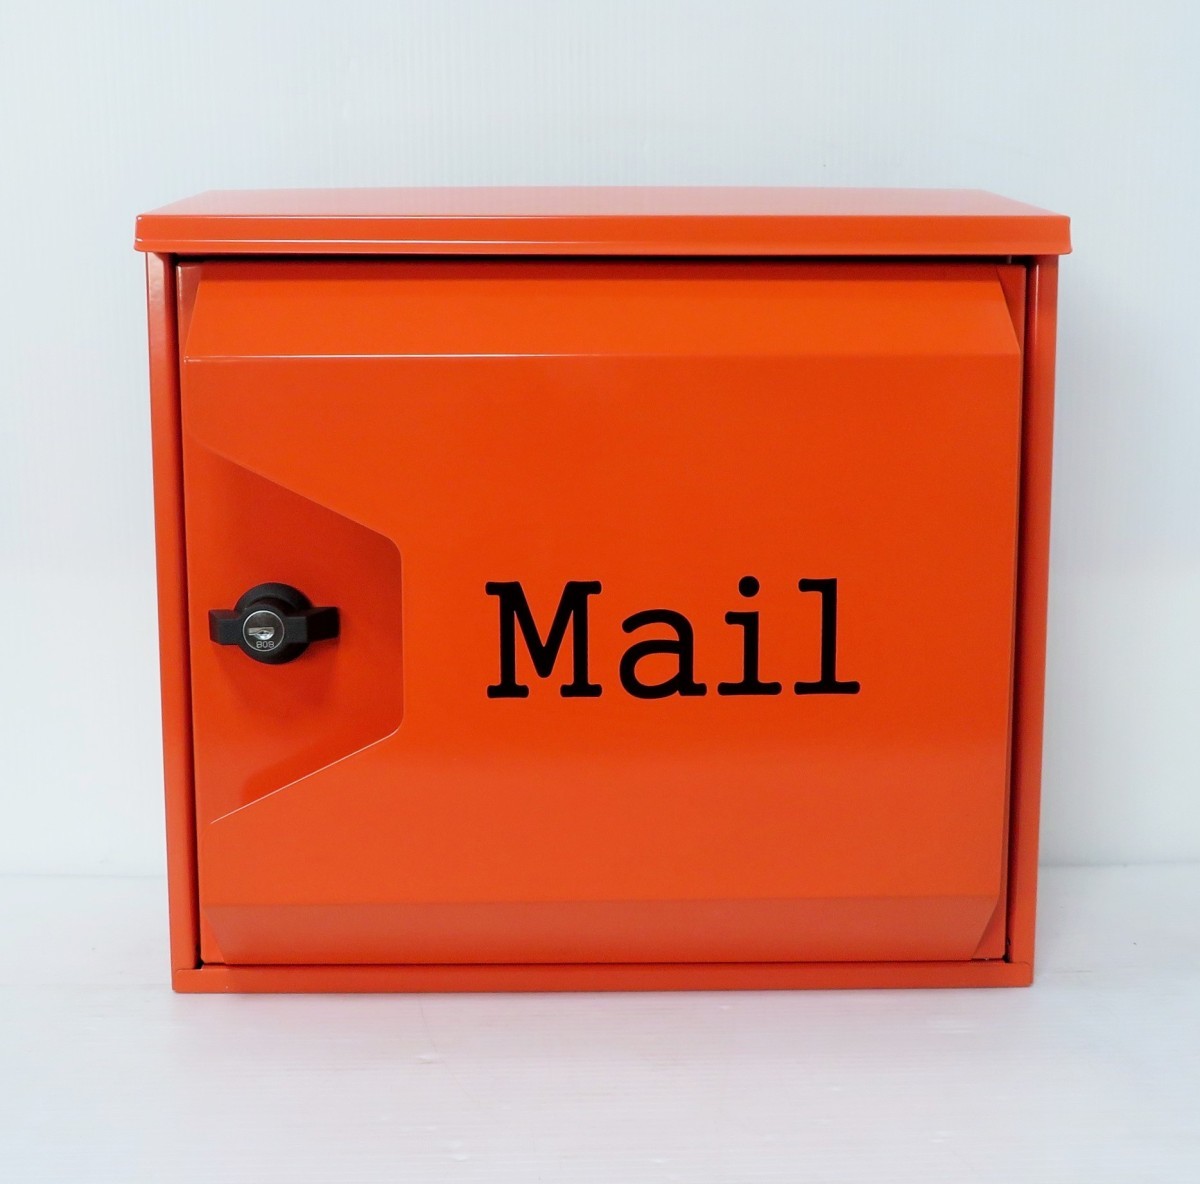 品質は非常に良い 郵便ポスト郵便受けおしゃれかわいい人気北欧モダンデザイン大型メールボックス オレンジ色ポストpm044 壁掛けプレミアムステンレス ポスト、郵便受け